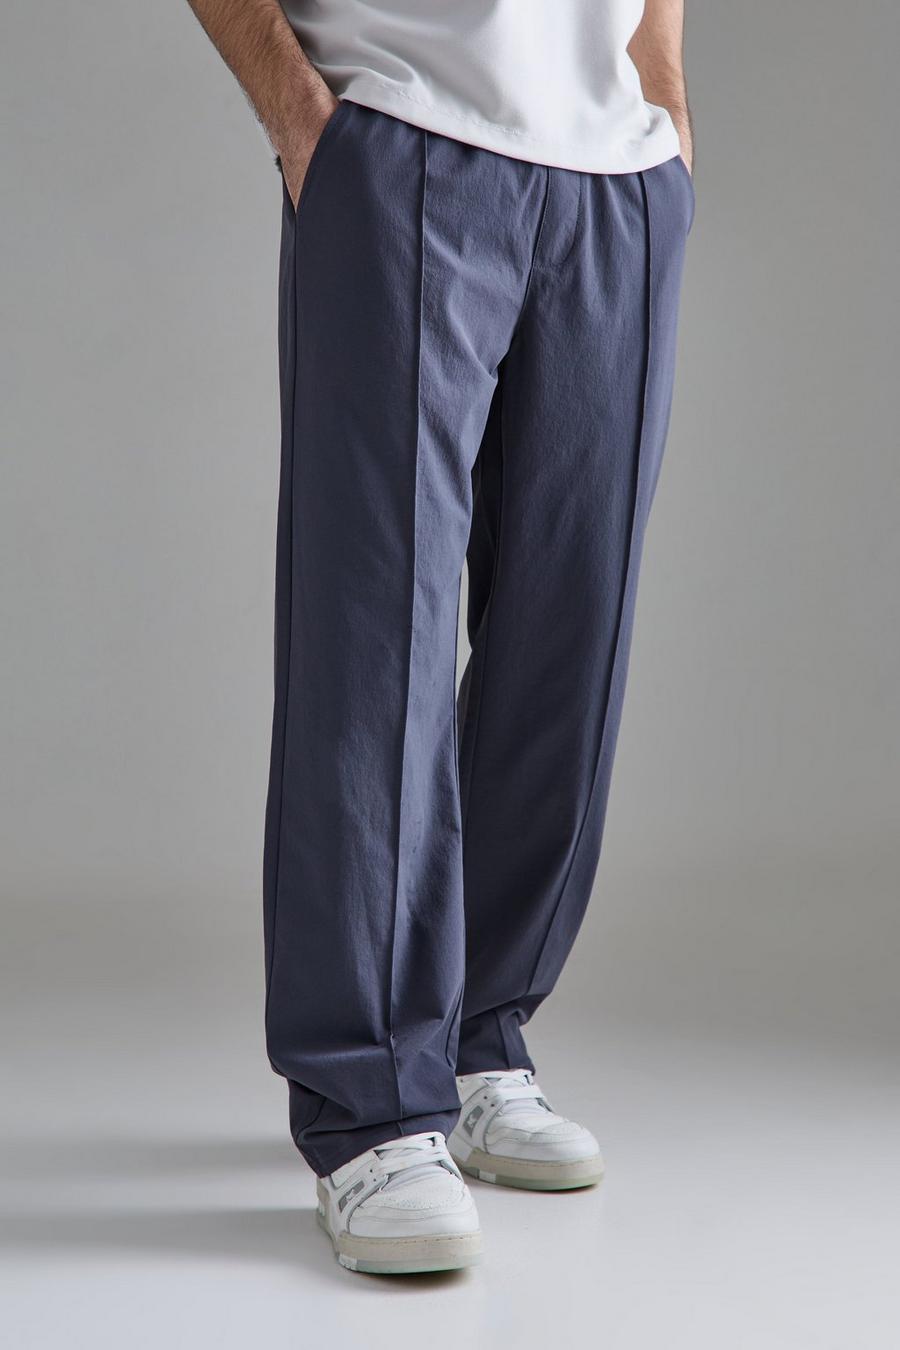 Pantalon technique stretch léger à pinces, Slate blue